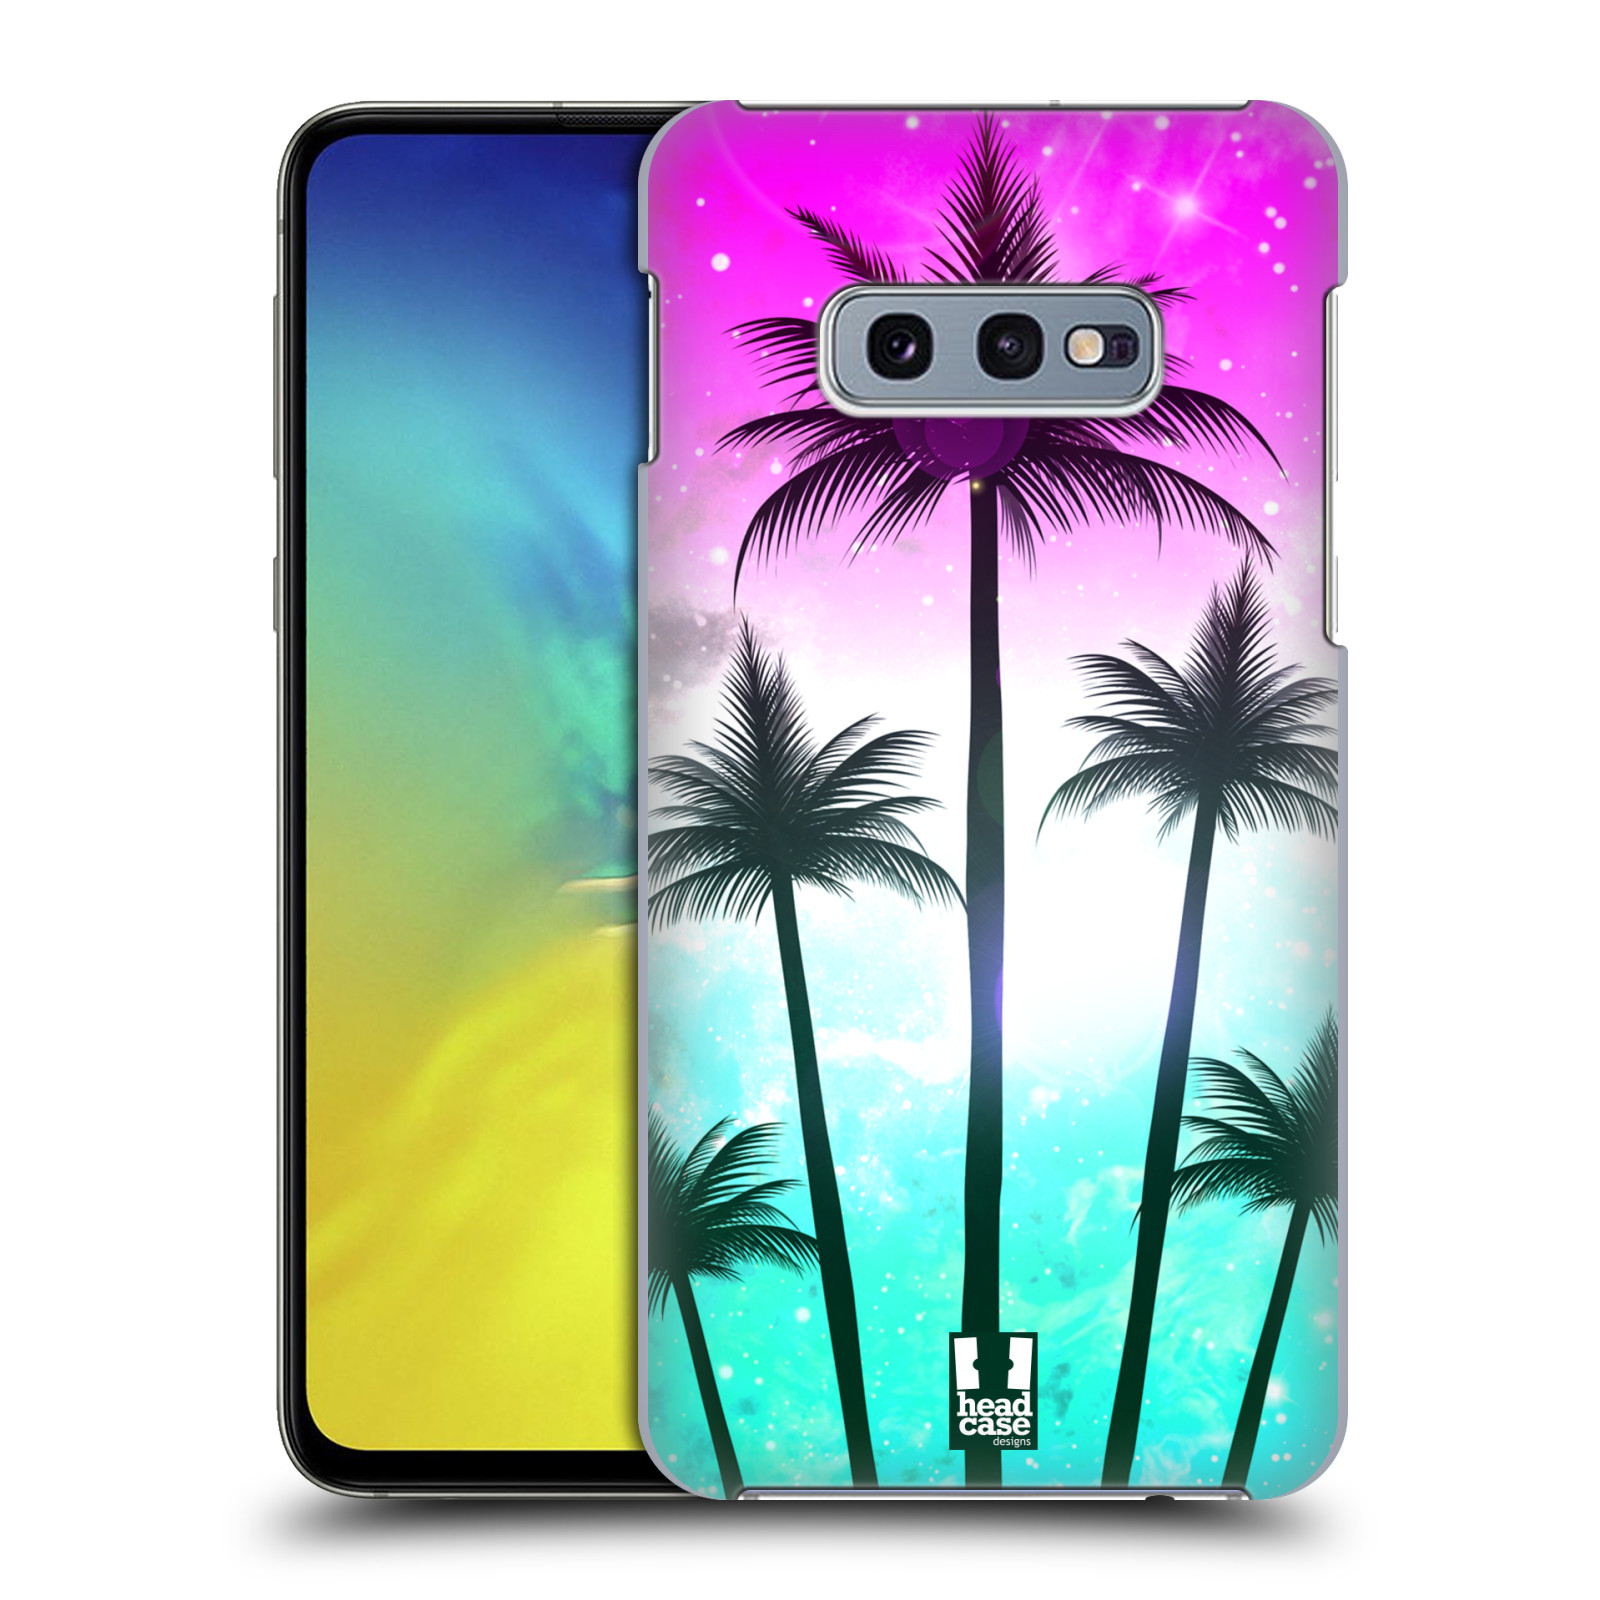 Pouzdro na mobil Samsung Galaxy S10e - HEAD CASE - vzor Kreslený motiv silueta moře a palmy RŮŽOVÁ A TYRKYS